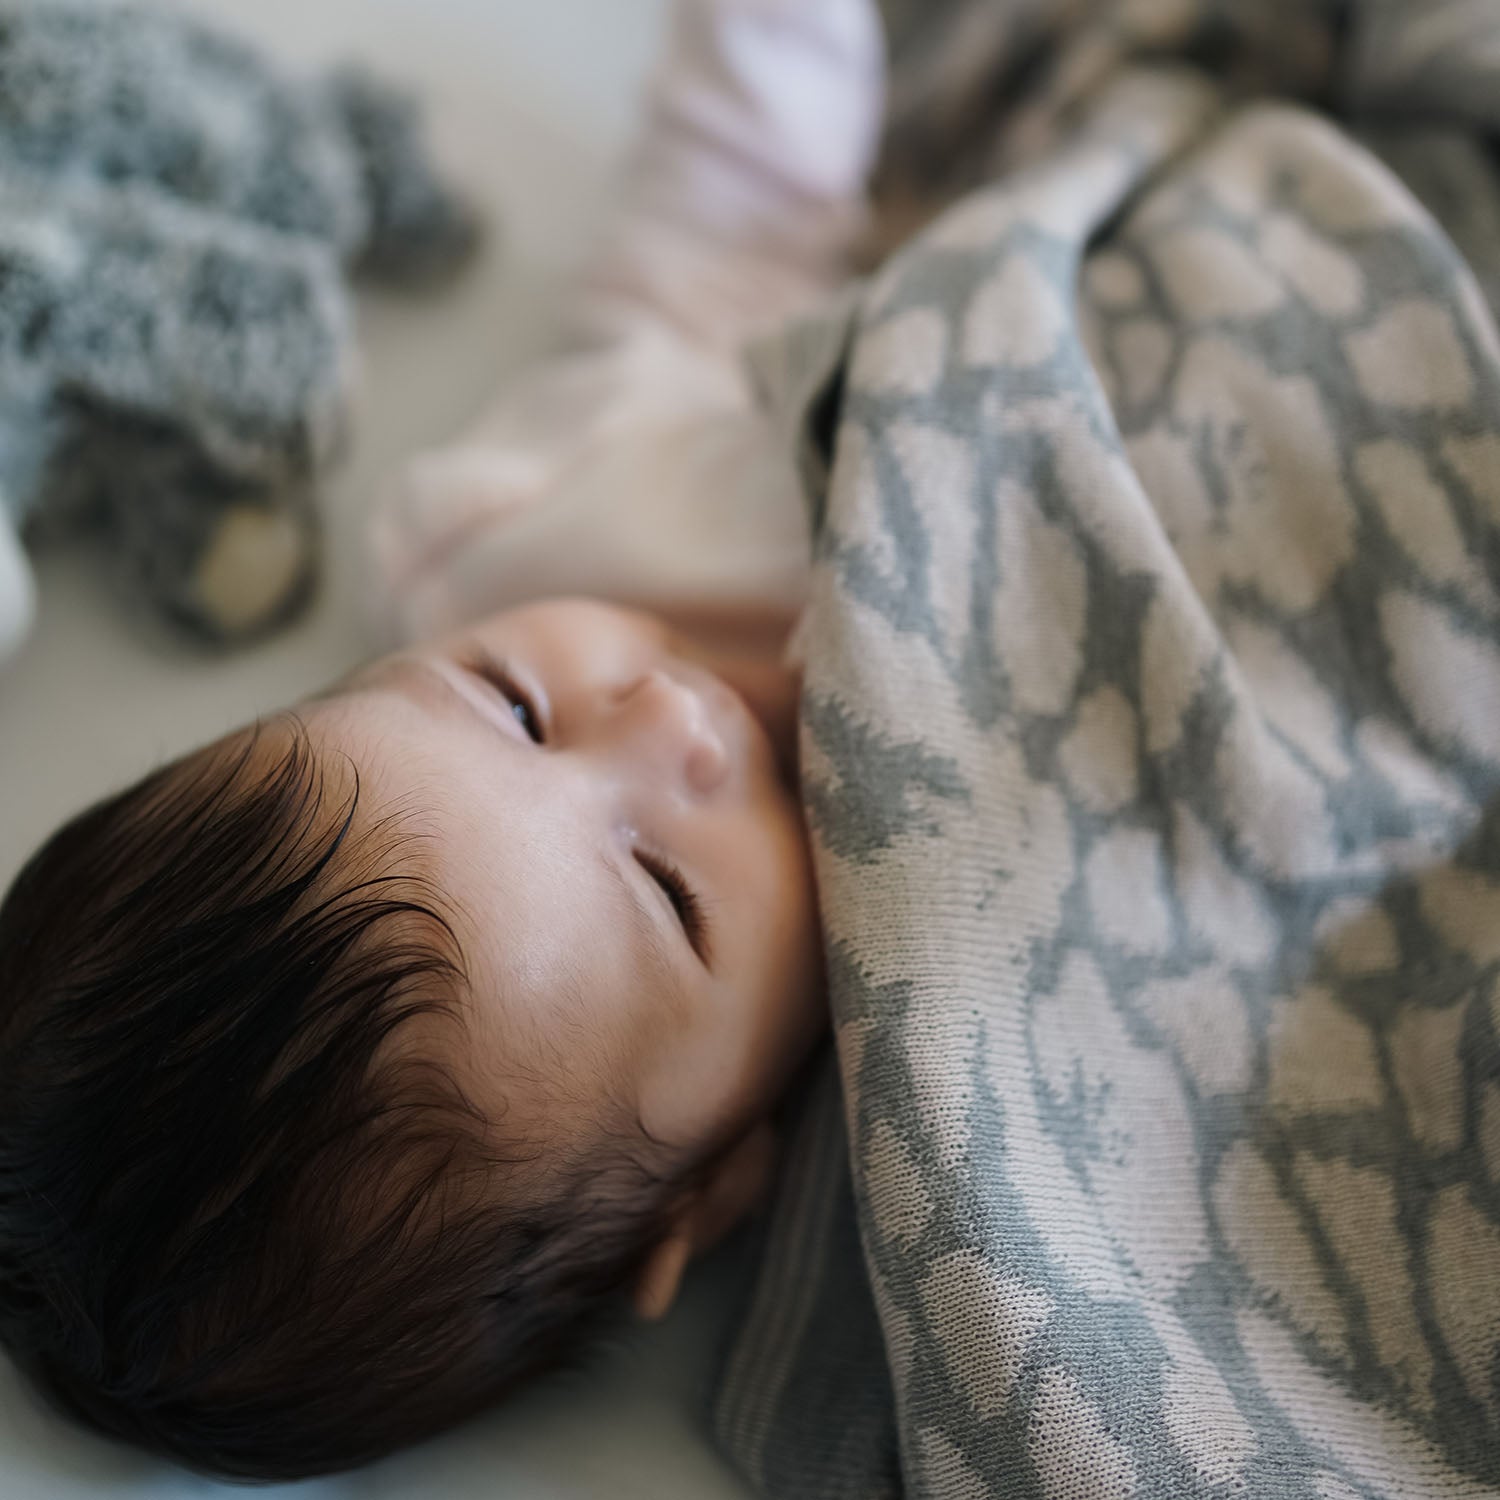 Personalisierte Babydecke 'IRIS' gestrickt aus Baumwolle mit Kaschmir. Das besondere Geschenk zur Geburt und Taufe. Individuell personalisierbar mit dem Wunschnamen des Kindes.